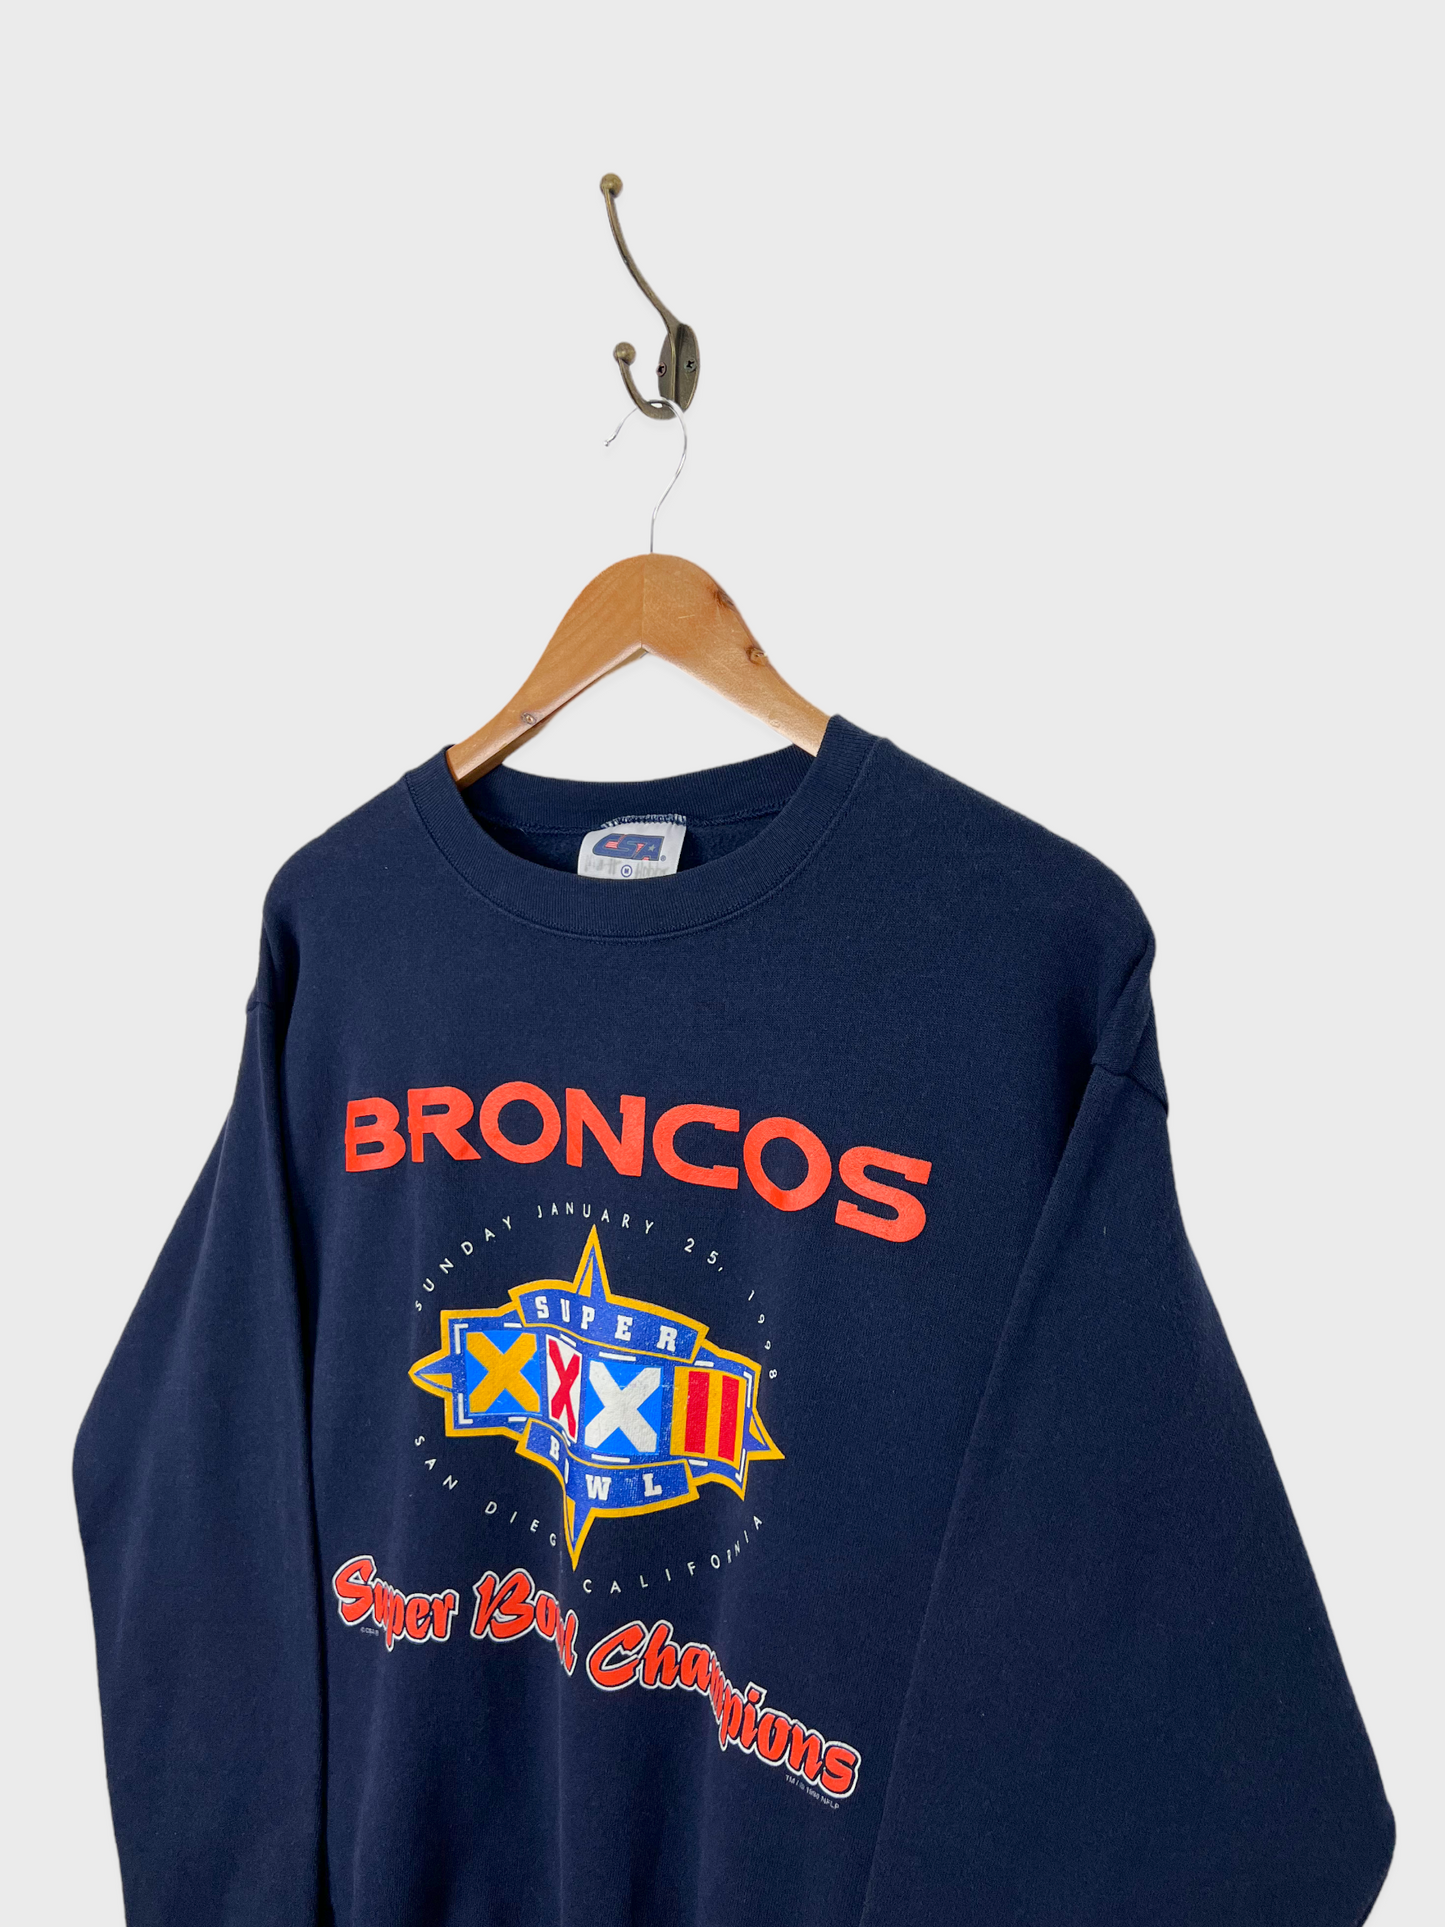 90's Denver Broncos NFL USA Made Vintage Sweatshirt Size 6-8